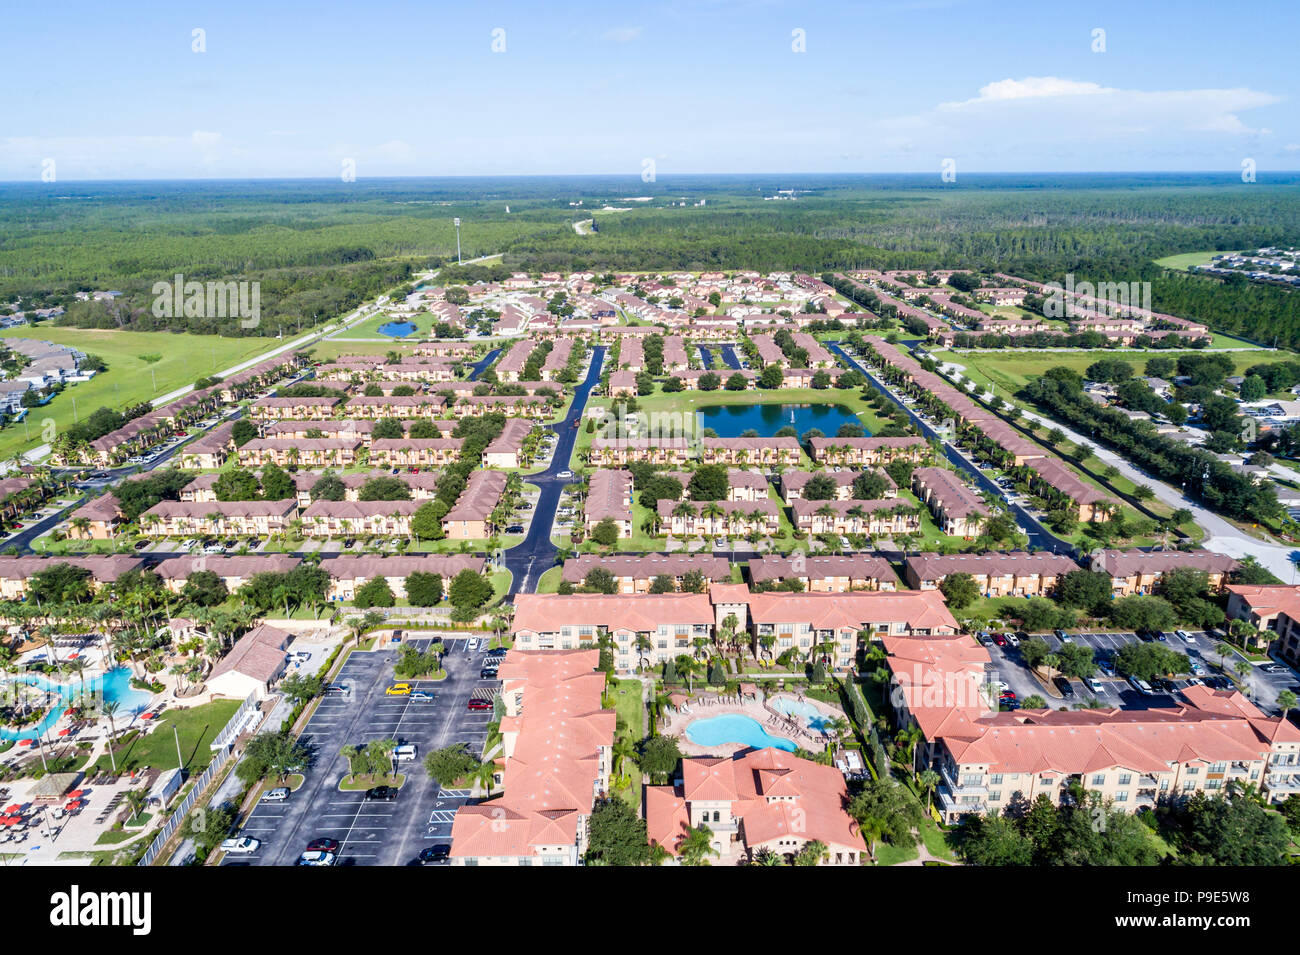 Orlando, Florida, Davenport, Welcome Homes USA Regal Palms Resort Bella Piazza Resort, Island Club West, barrio residencial, vista aérea, FL18 Foto de stock